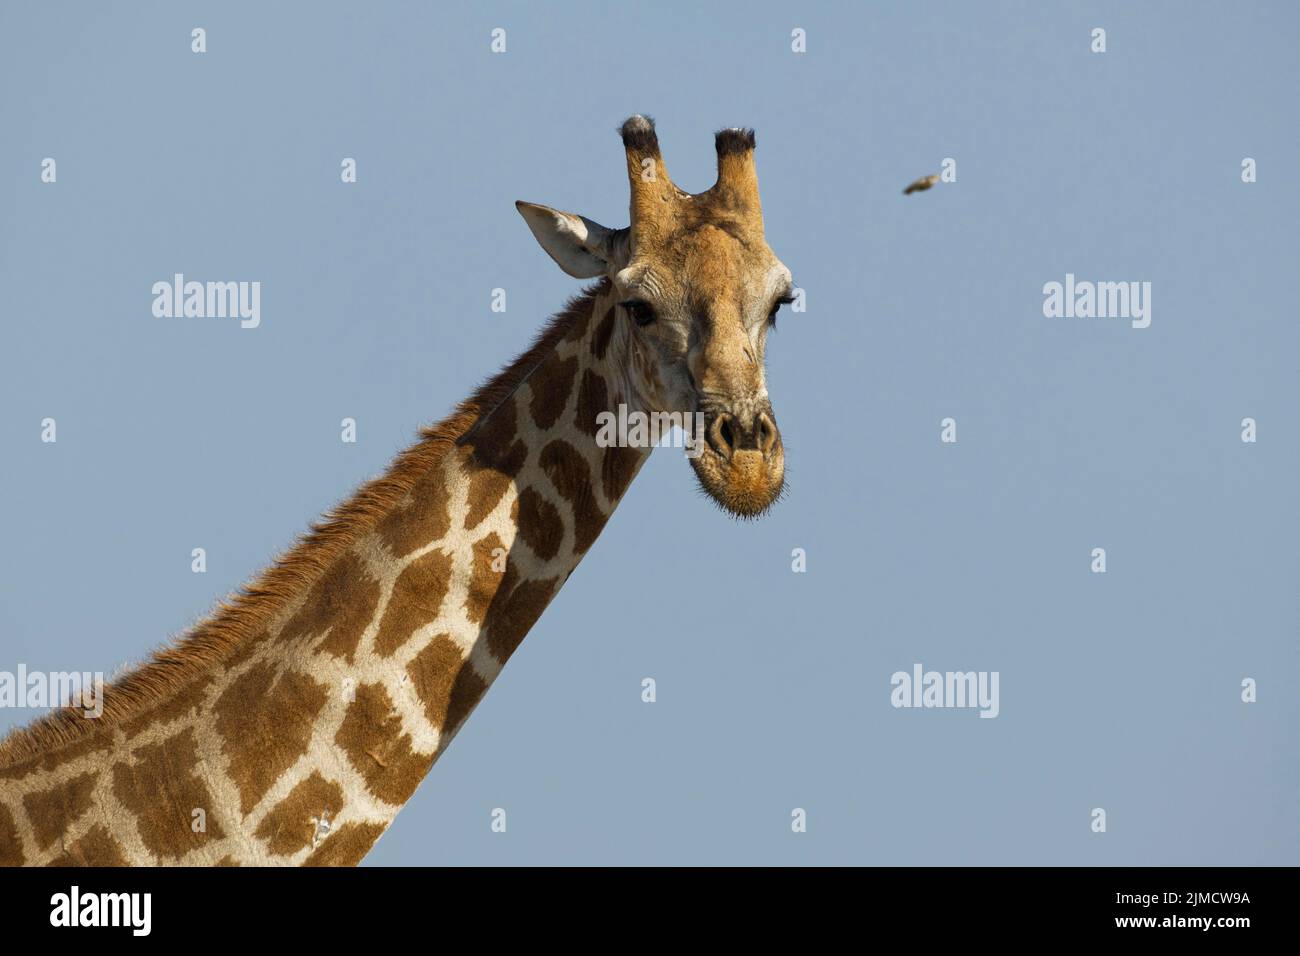 Jirafa angoleña (Giraffa camelopardalis angolensis), adulto, foto de la cabeza contra un cielo azul, retrato de animales, Parque Nacional Etosha, Namibia, África Foto de stock